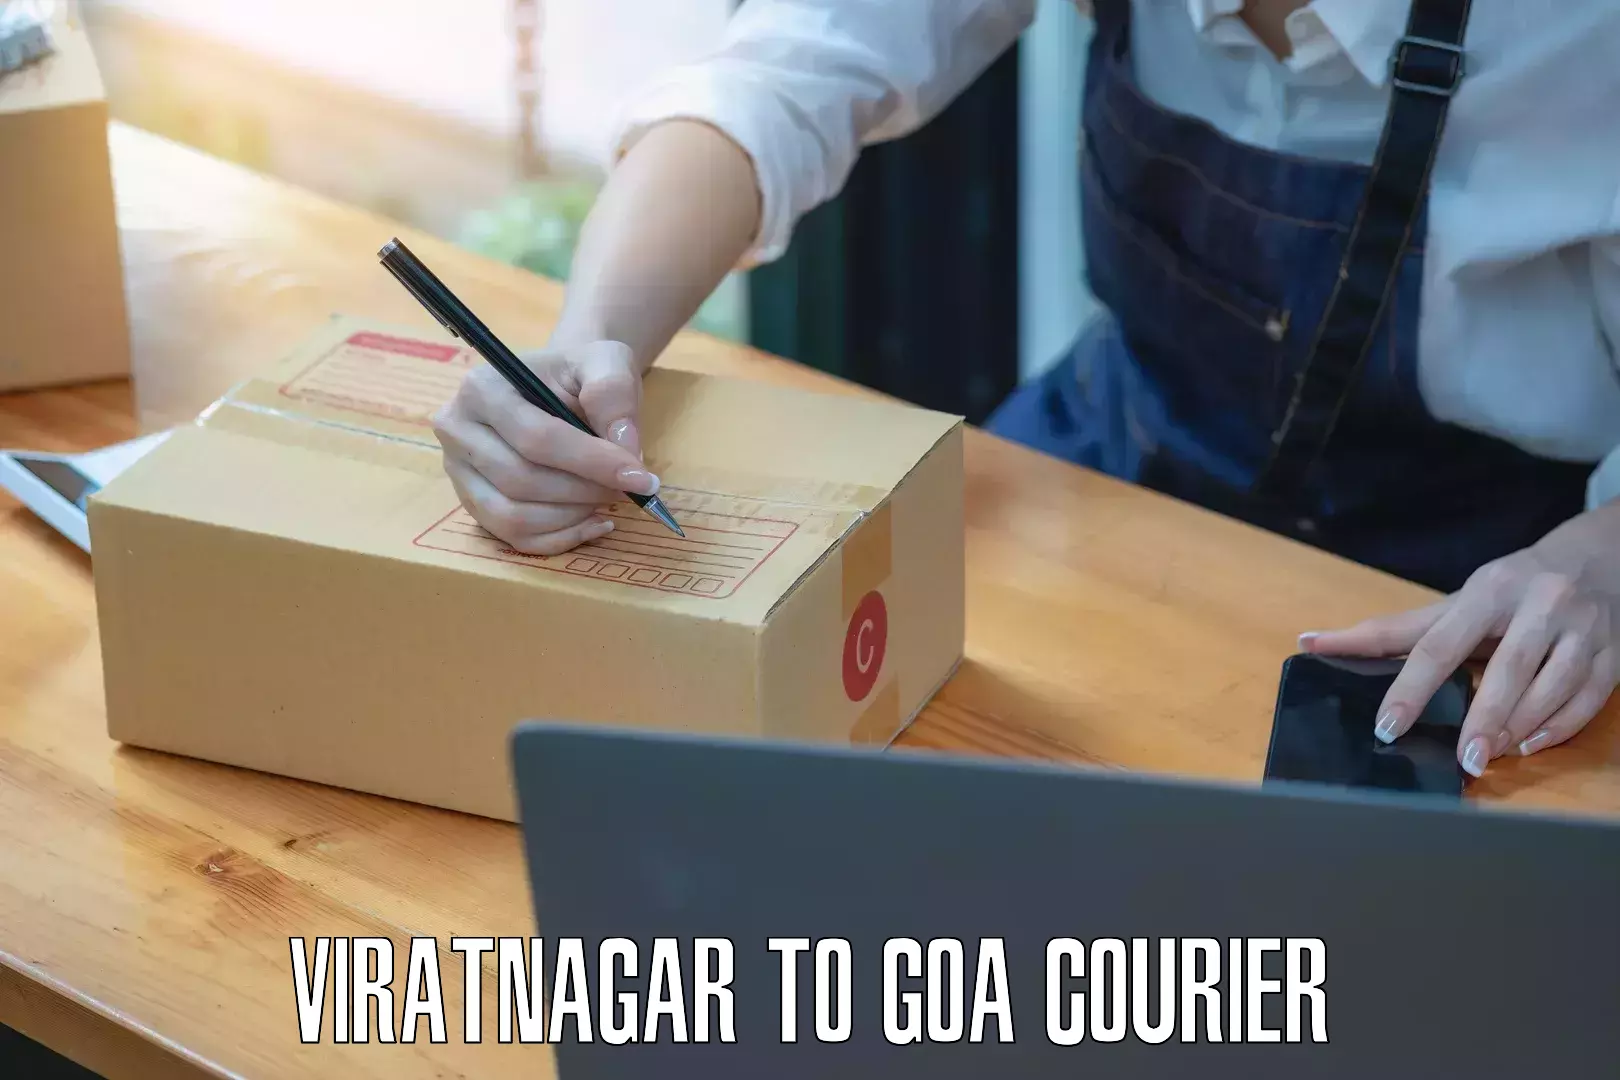 Courier app Viratnagar to Mormugao Port